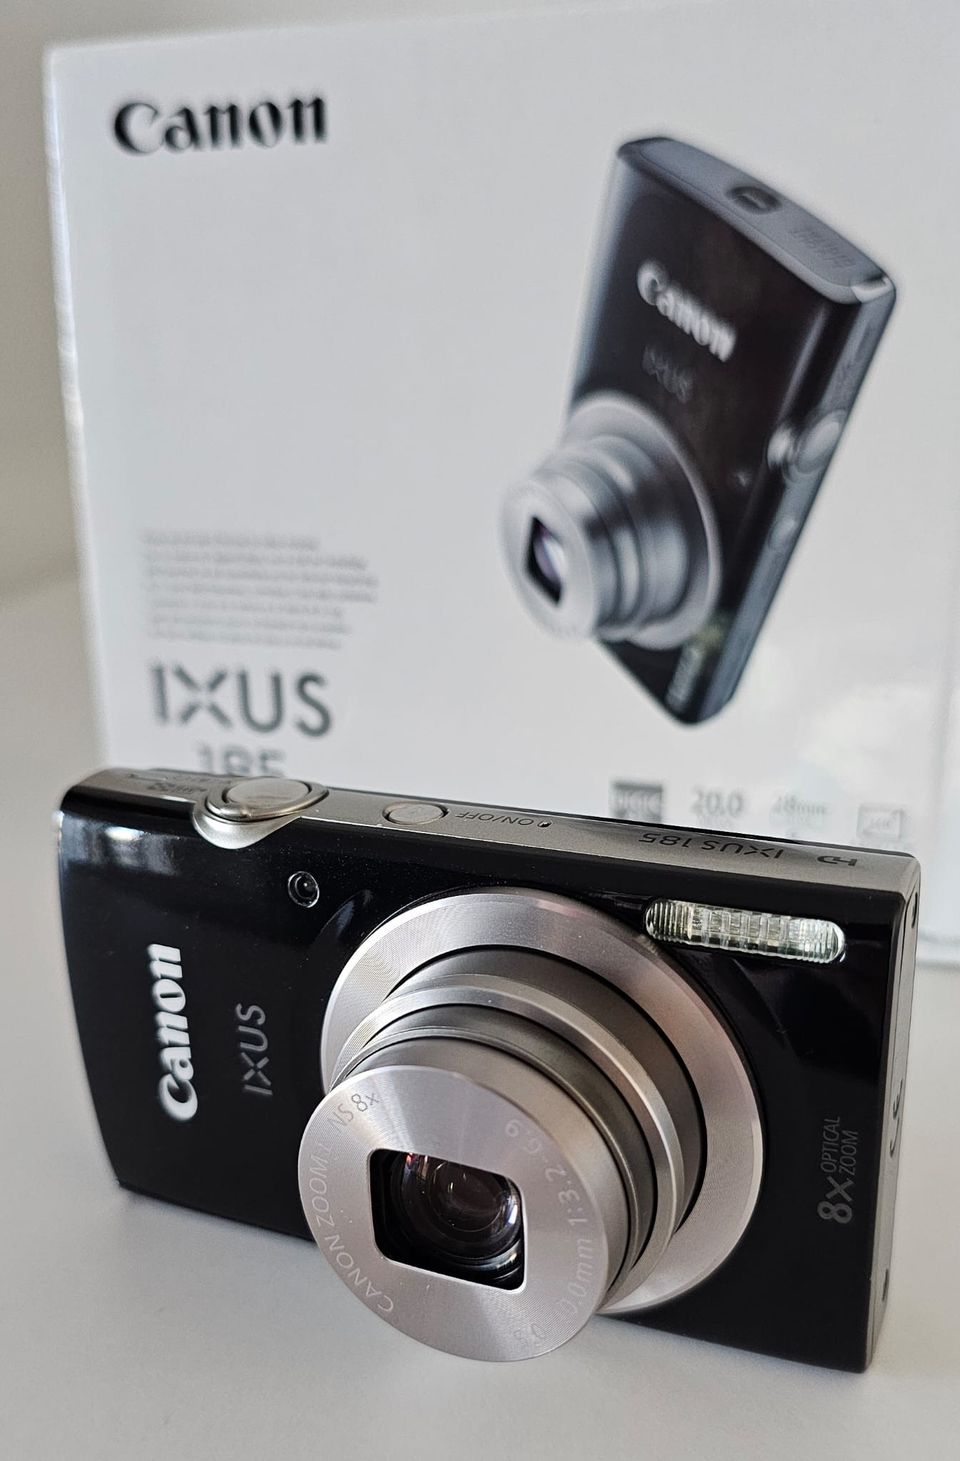 Canon ixus 185